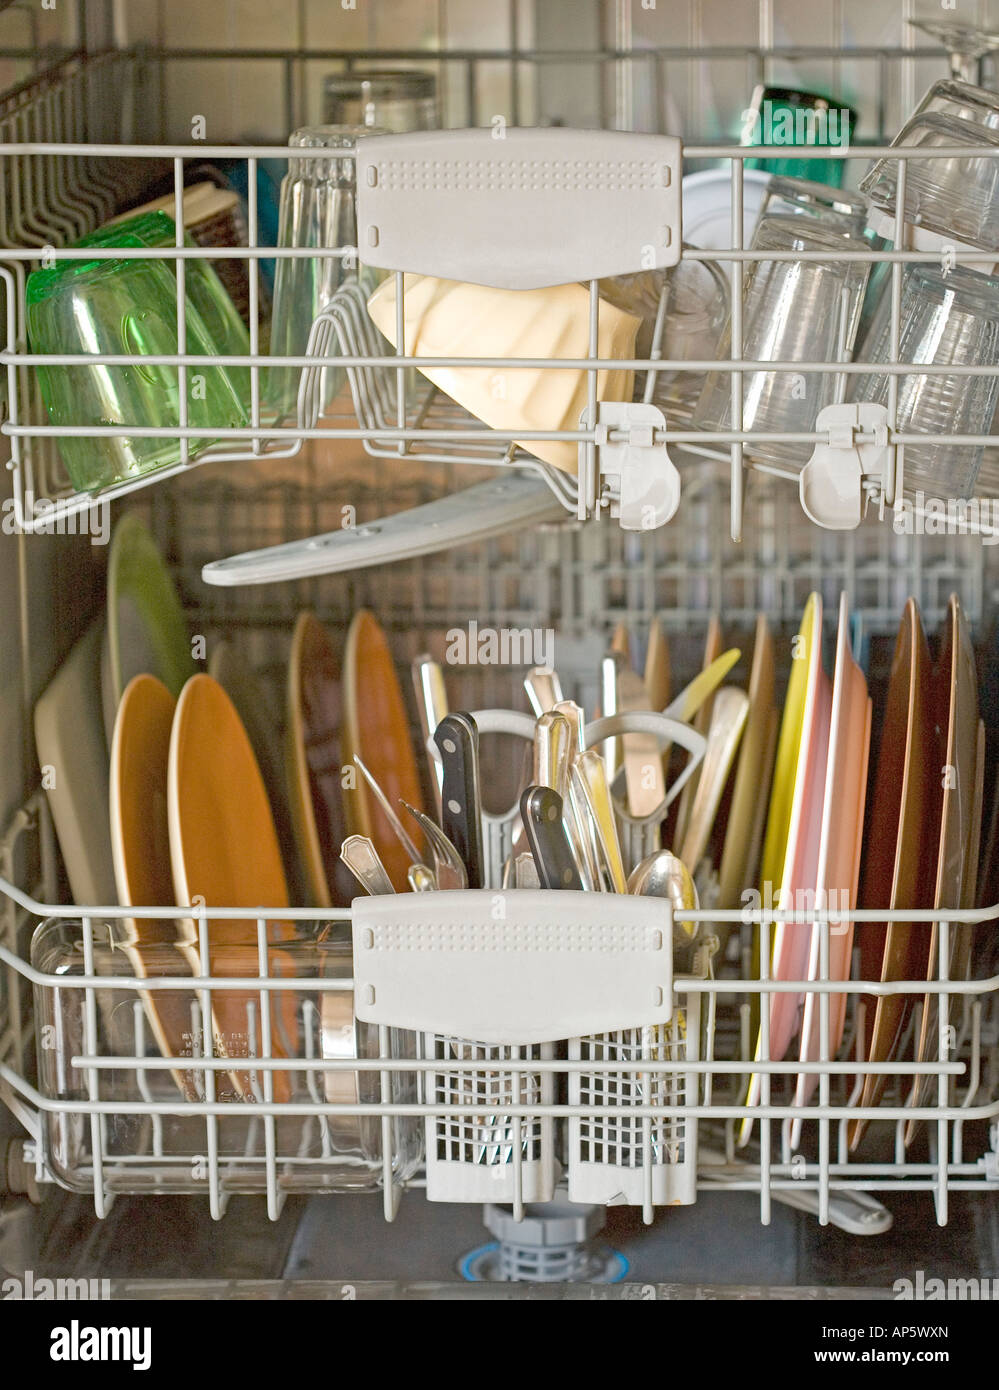 Ouvrir un lave-vaisselle plein de vaisselle propre home Décharger appareil de cuisine Banque D'Images